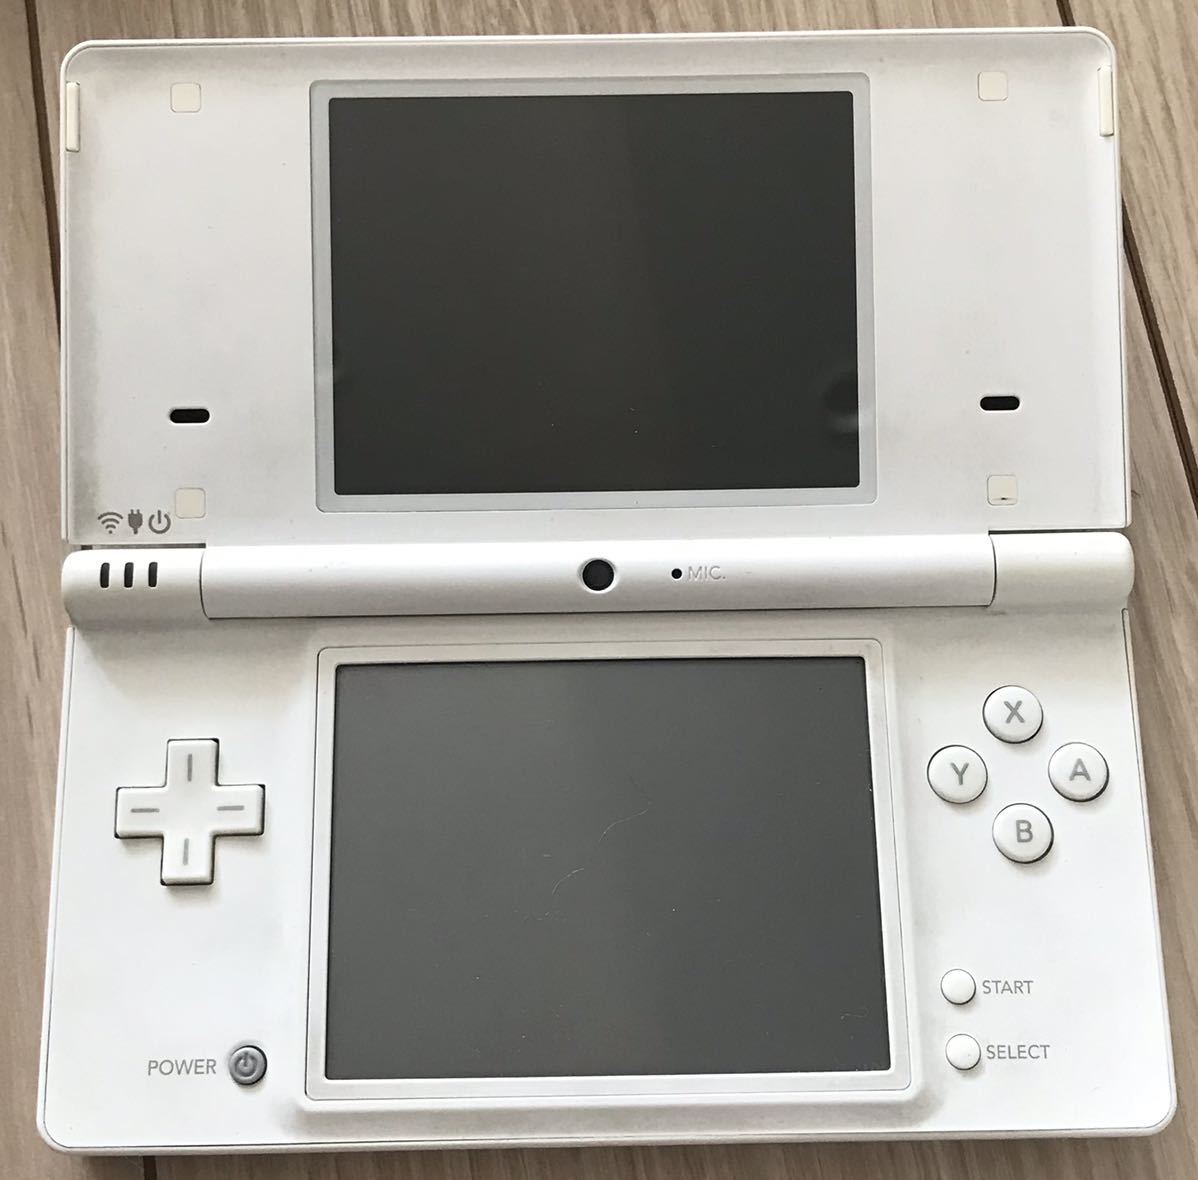 【動作確認済】Nintendo DSI 任天堂 ニンテンドー　ホワイト